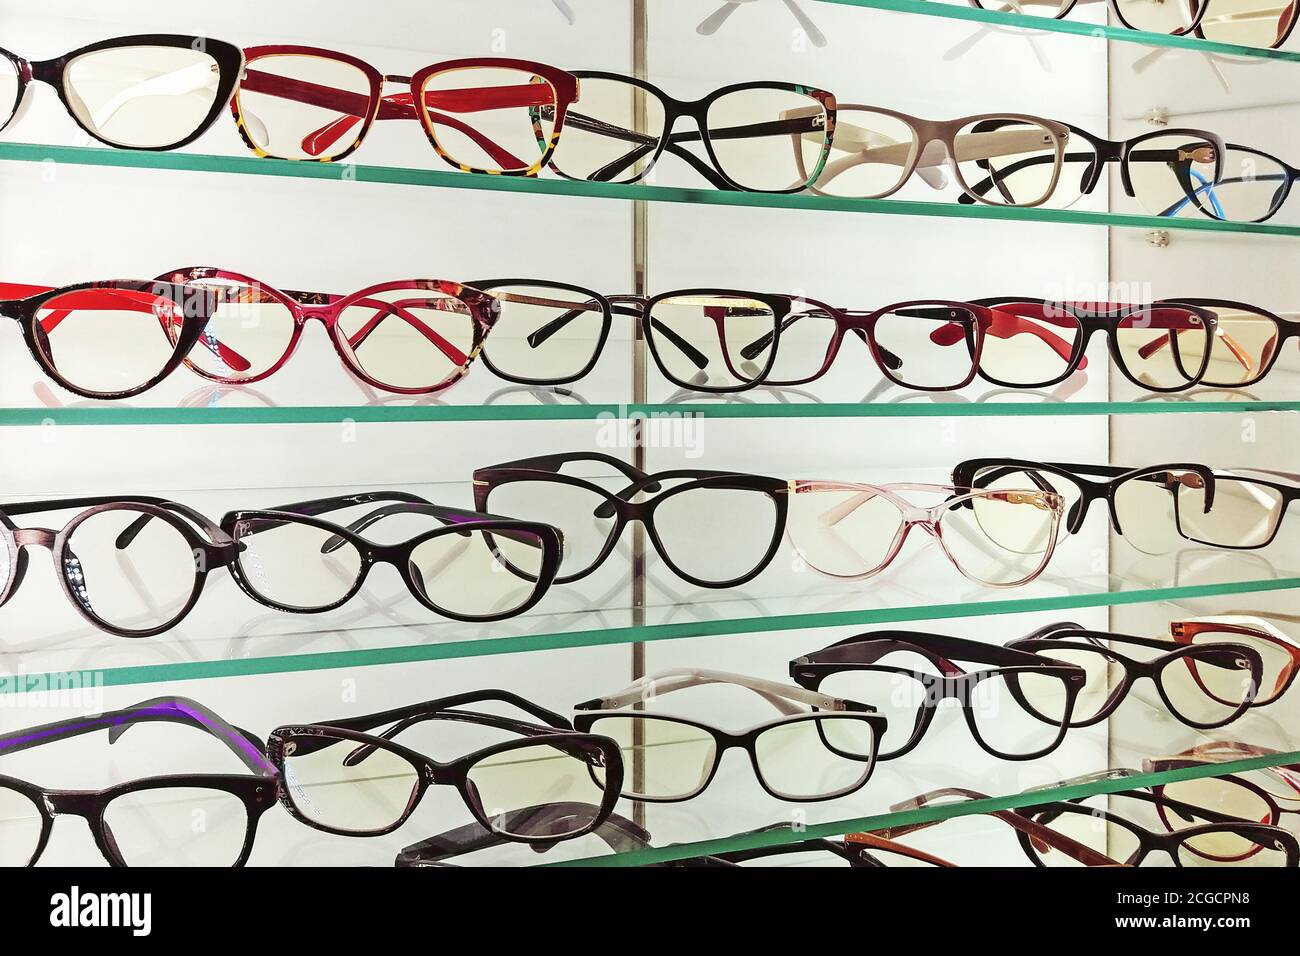 eyeglasses frames at eyewear shop display Stock Photo